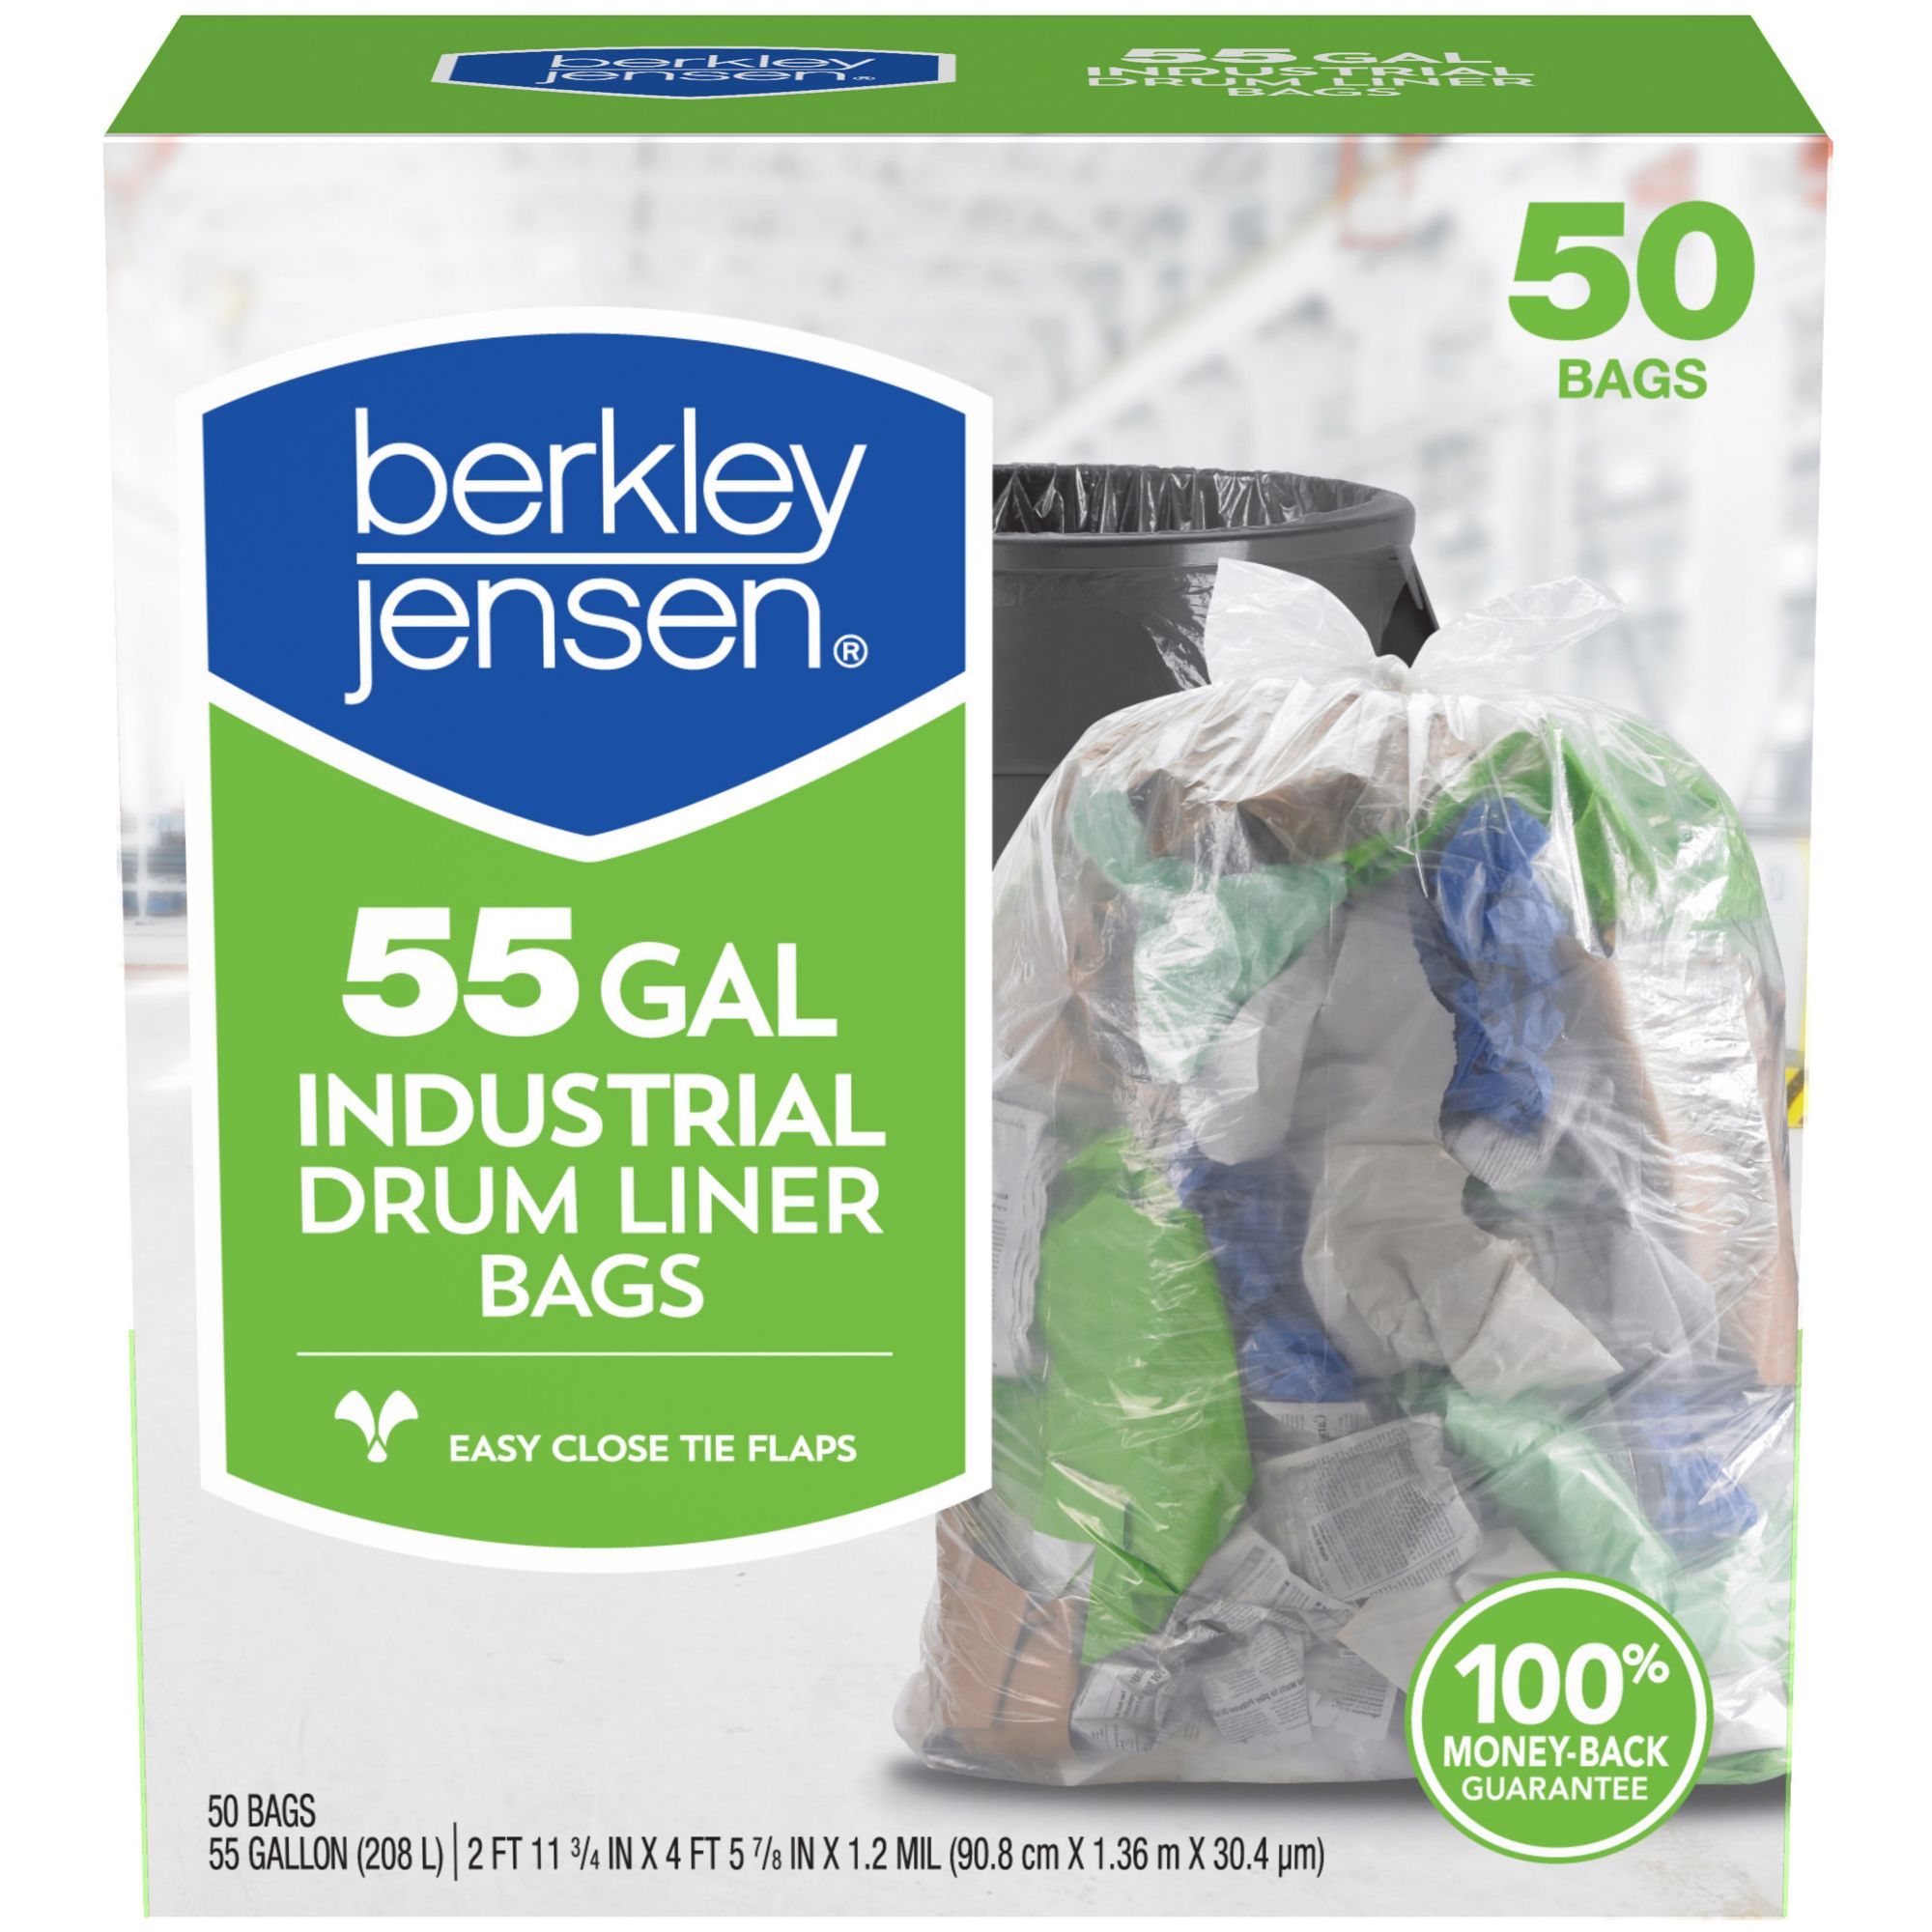 Berkley Jensen 55-Gal. 1.2mil Industrial Drum Liner Bags